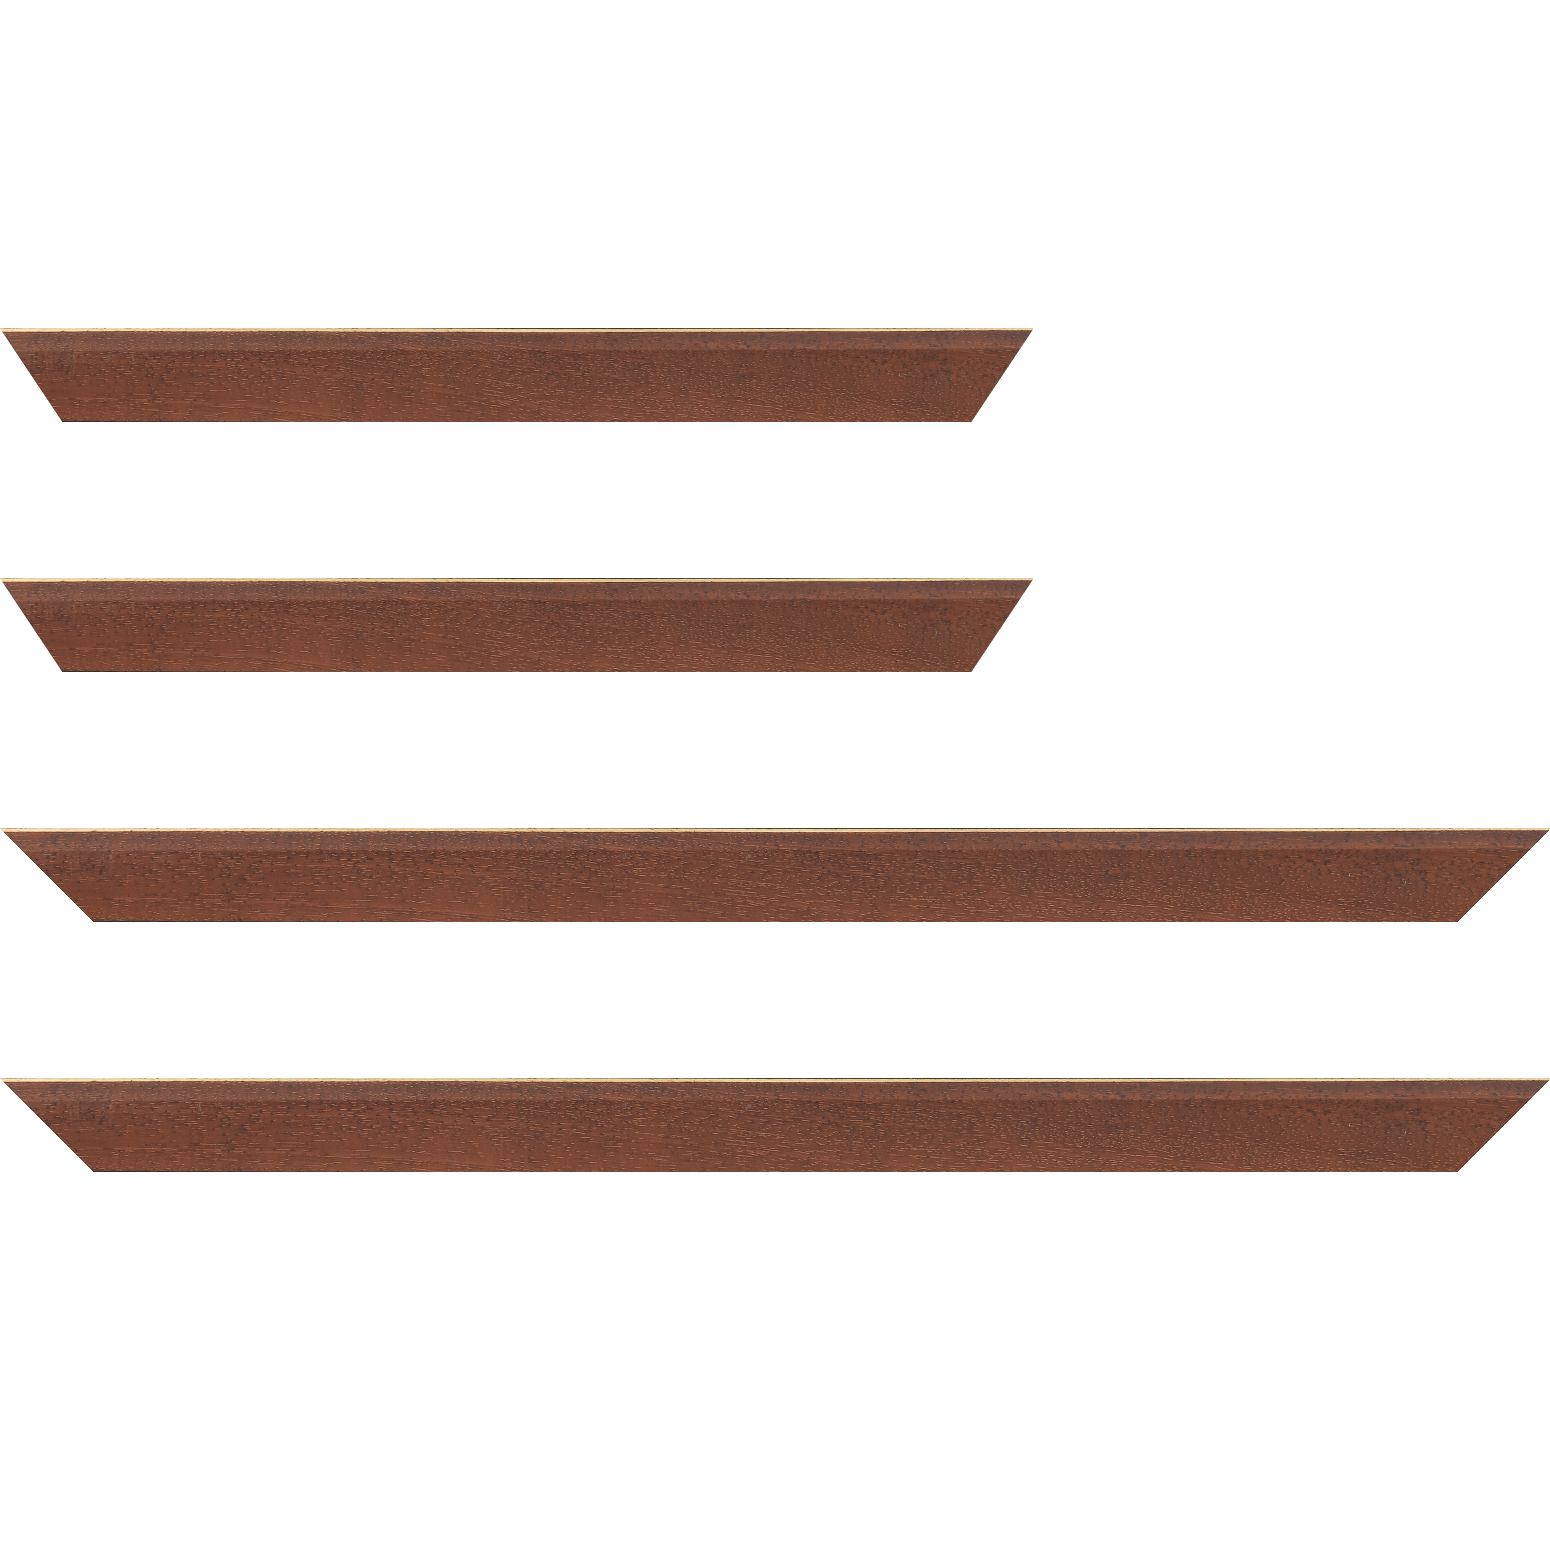 Baguette bois profil plat escalier largeur 3cm couleur marron miel satiné filet créme extérieur - 92x60